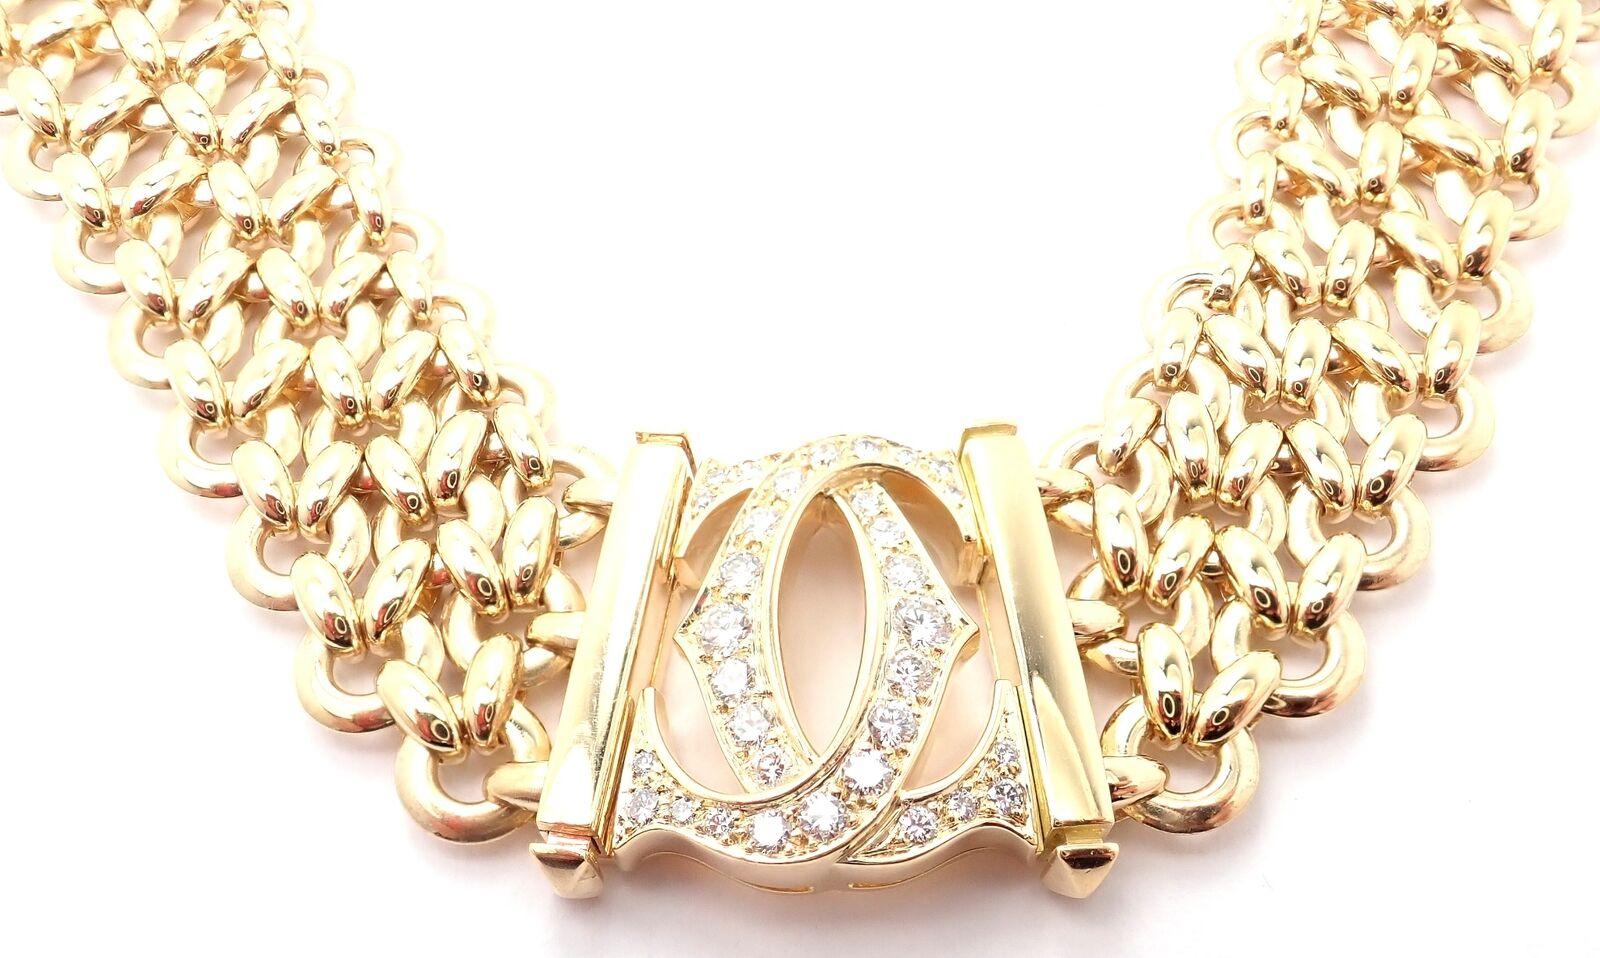 18k Gelbgold Penelope Double C Diamond Three Row Halskette von Cartier. 
Mit 16 runden Diamanten im Brillantschliff VVS1 Reinheit, E Farbe Gesamtgewicht ca. .70ct
Diese atemberaubende Halskette wird mit einer Cartier-Box geliefert.
Einzelheiten: